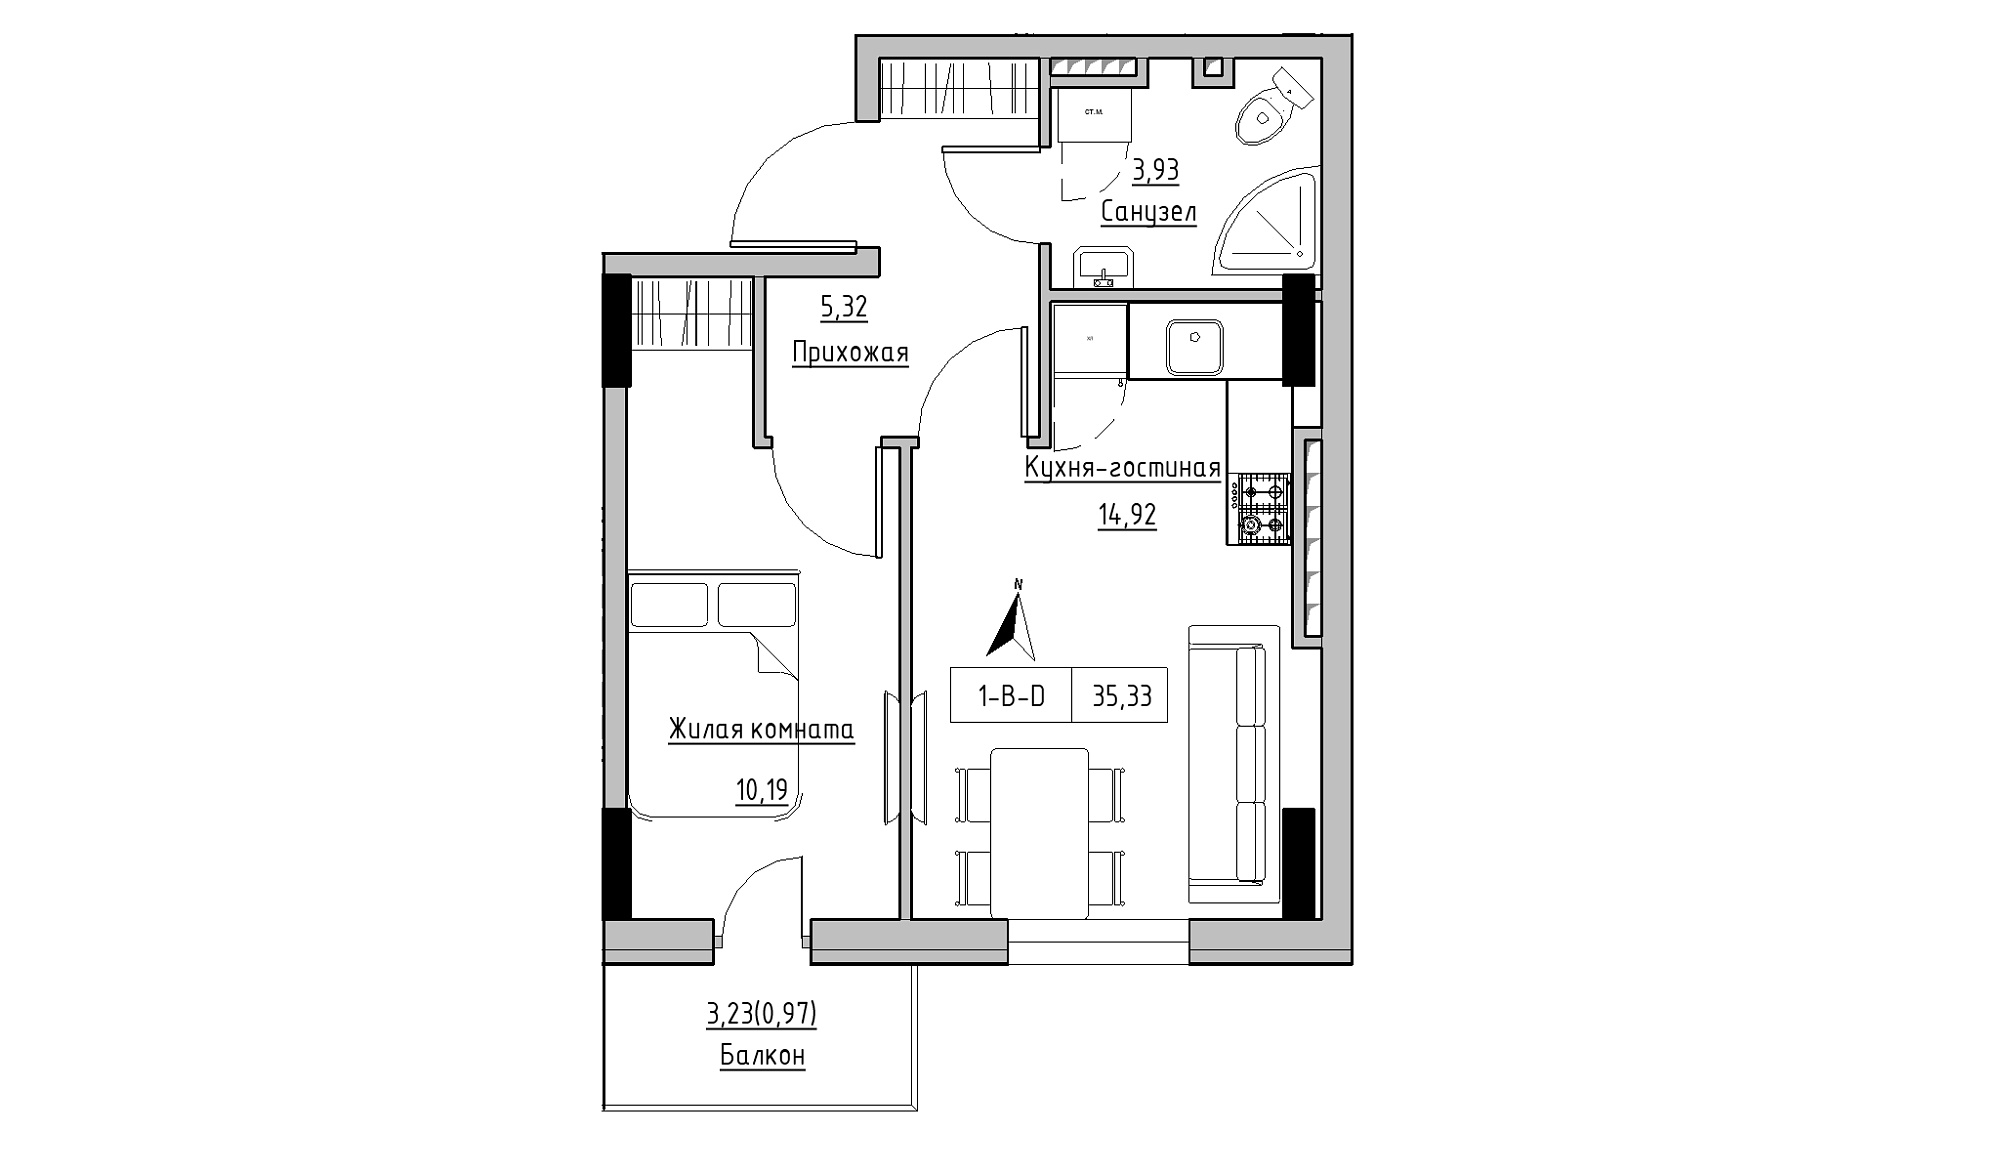 Планування 1-к квартира площею 35.33м2, KS-025-05/0012.